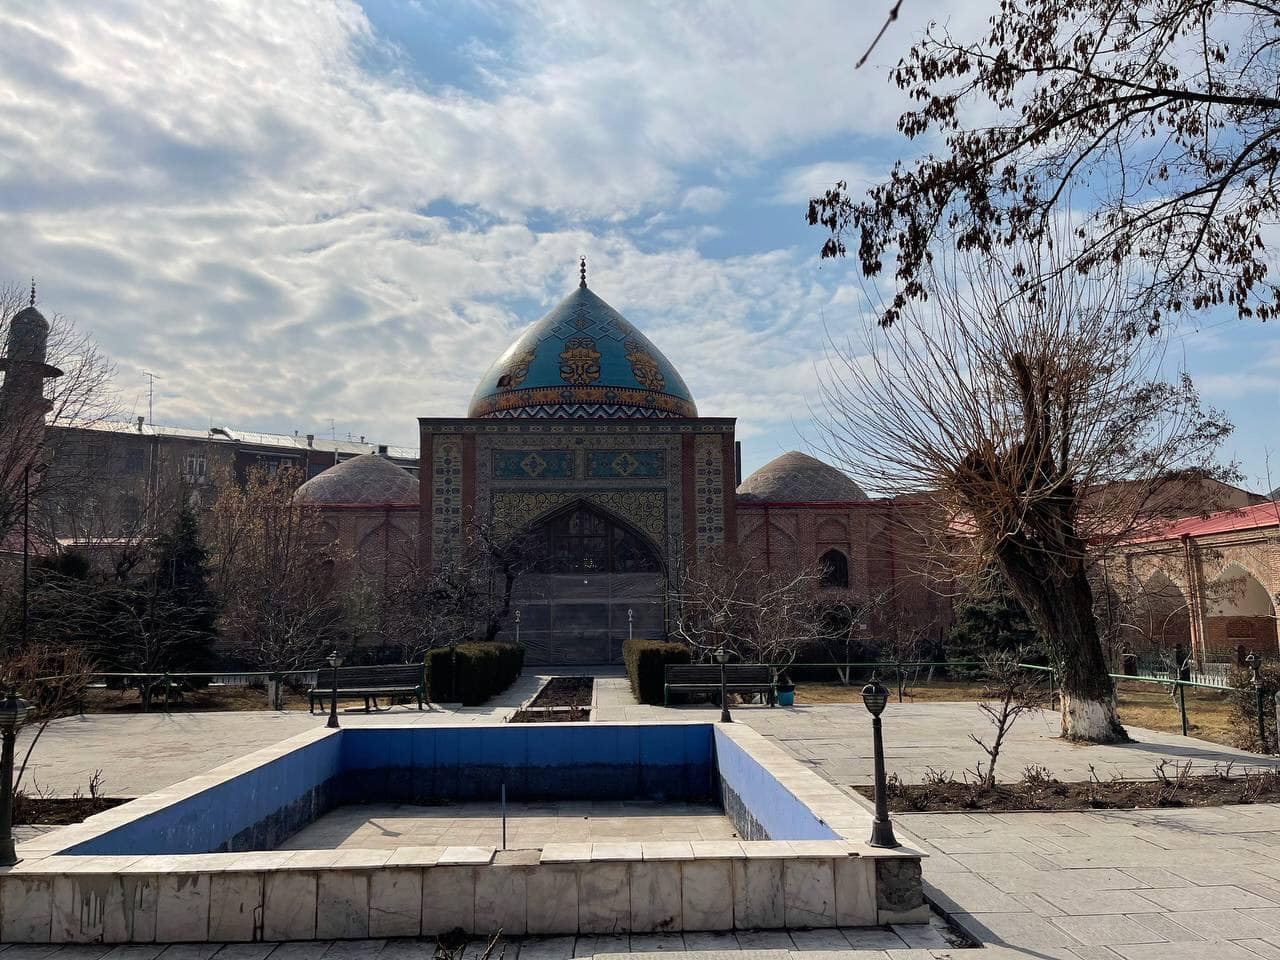 Депутаты Милли Меджлиса посетили Голубую мечеть в Ереване (ФОТО)